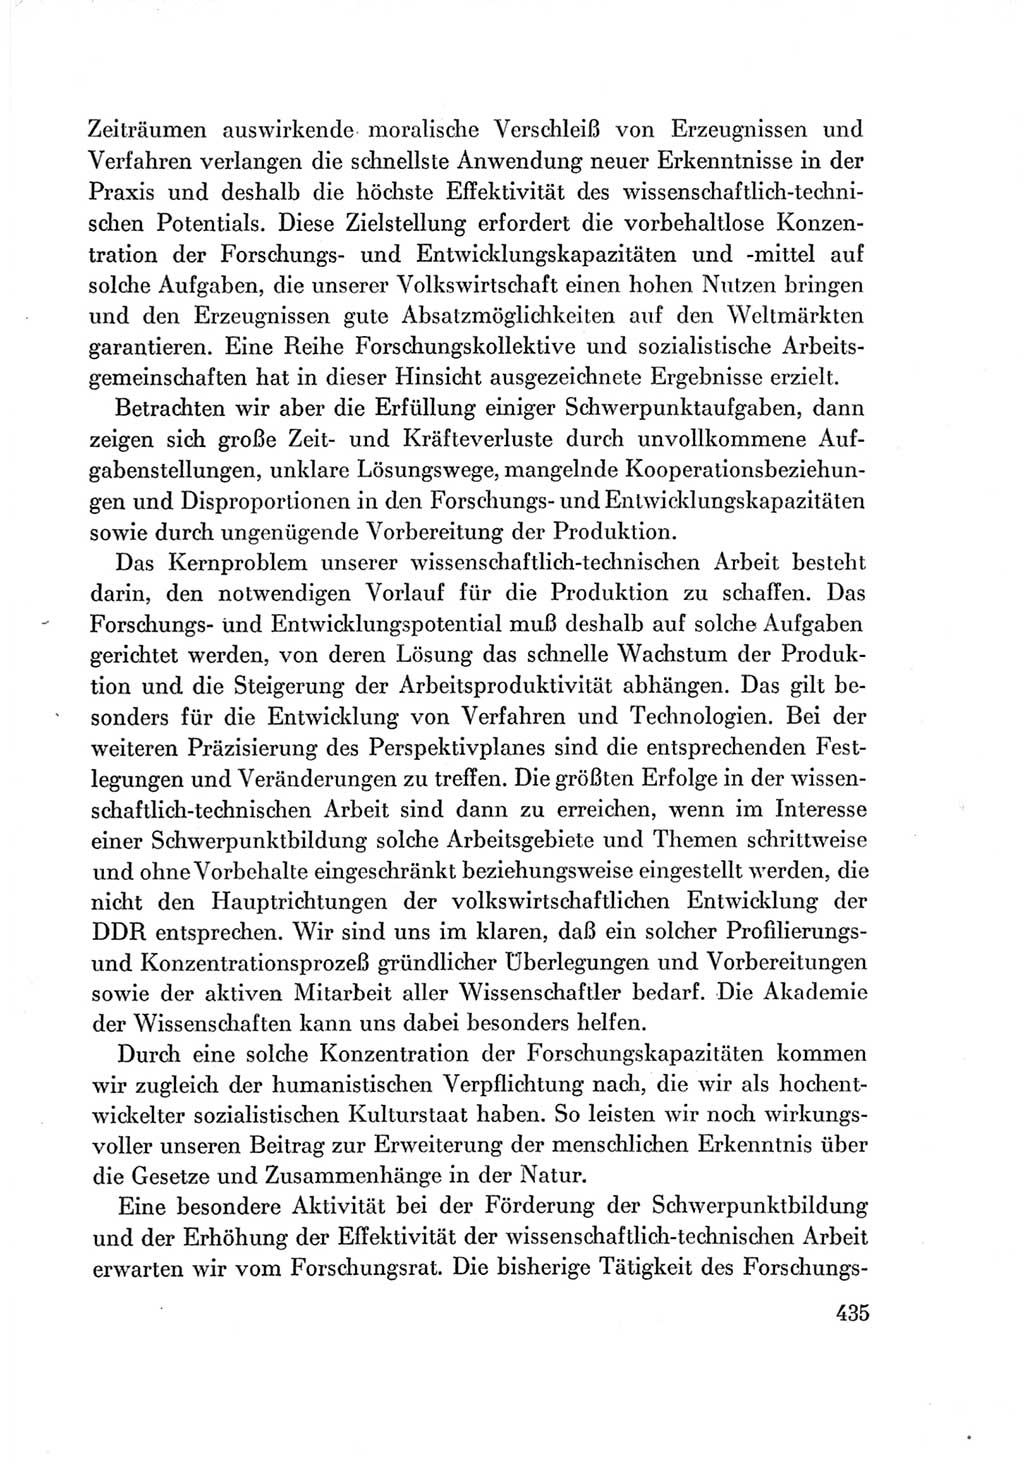 Protokoll der Verhandlungen des Ⅶ. Parteitages der Sozialistischen Einheitspartei Deutschlands (SED) [Deutsche Demokratische Republik (DDR)] 1967, Band Ⅰ, Seite 435 (Prot. Verh. Ⅶ. PT SED DDR 1967, Bd. Ⅰ, S. 435)